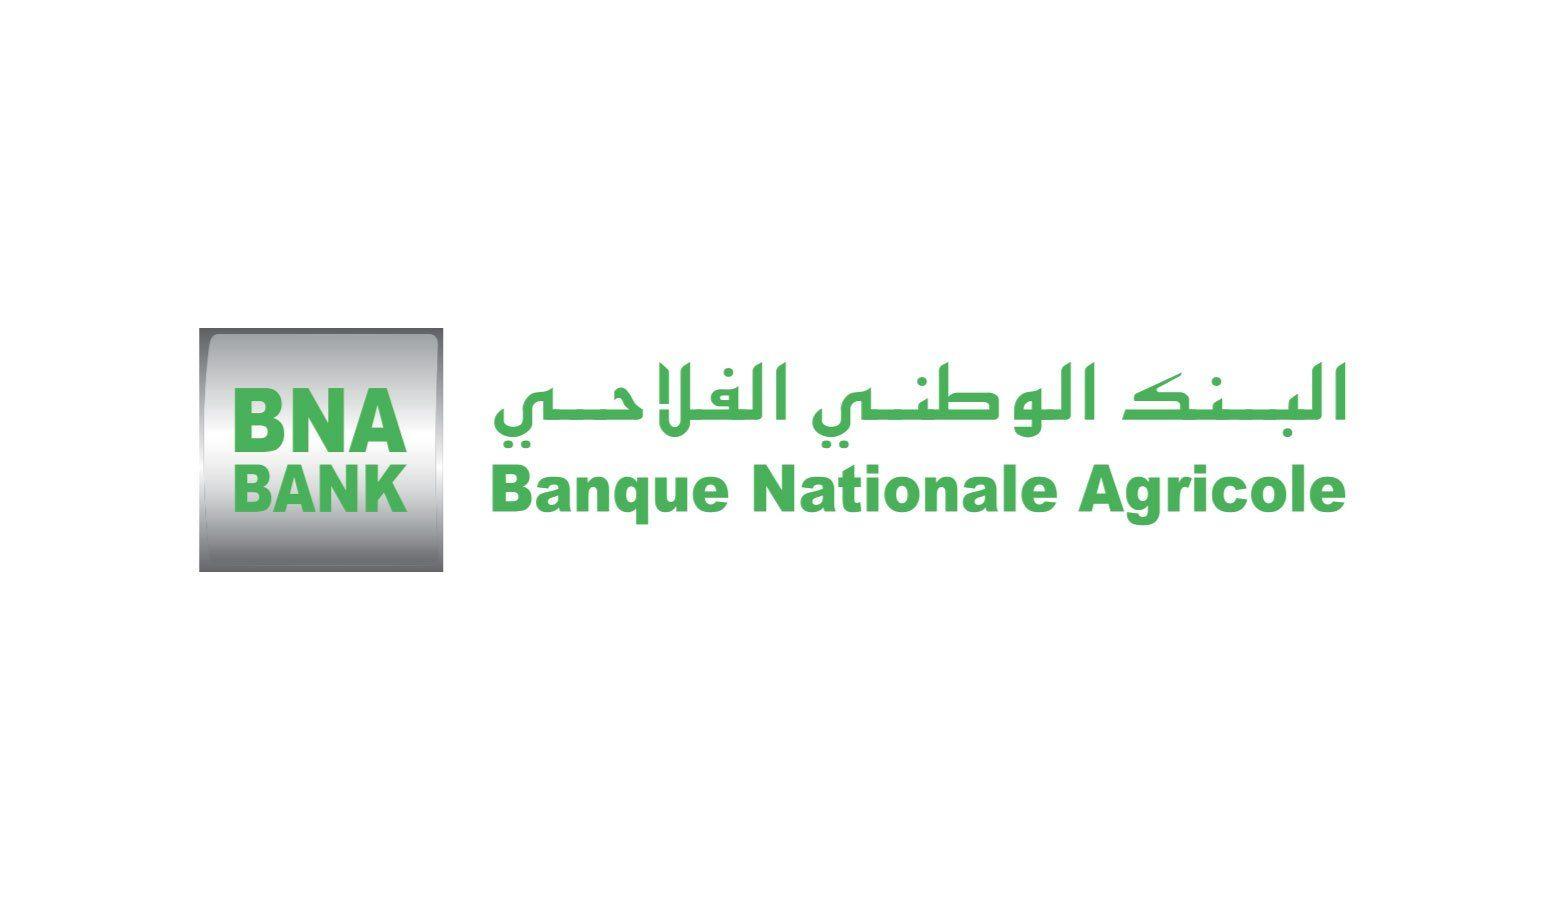 BNA Logo - Logo BNA | Tunimarkets